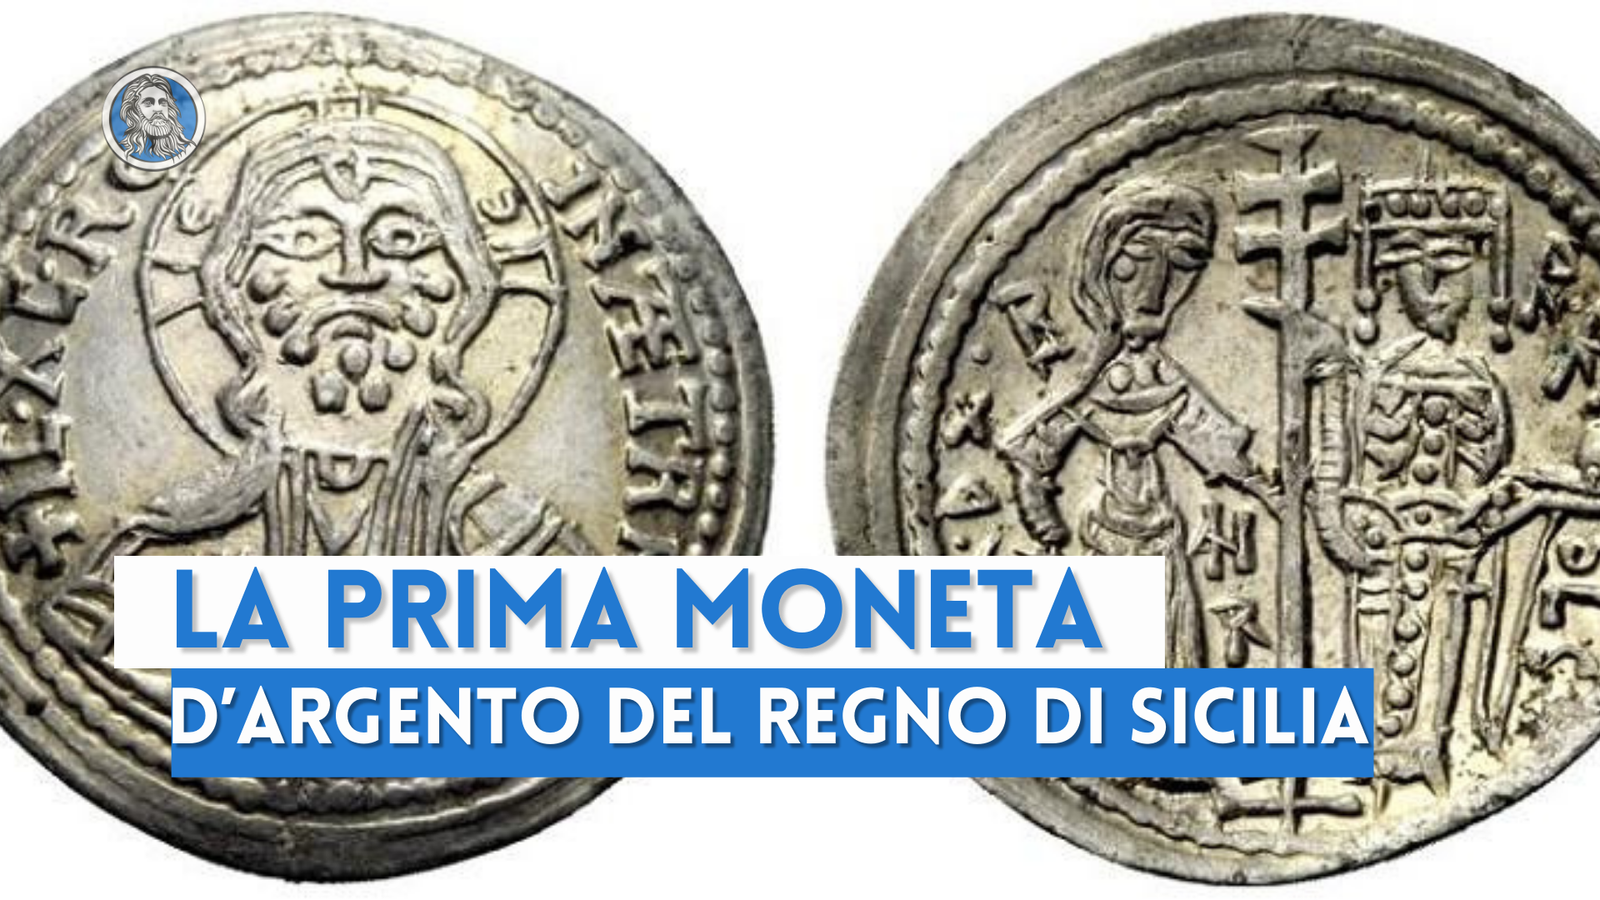 Il Ducale: la prima moneta d'argento del regno di Sicilia